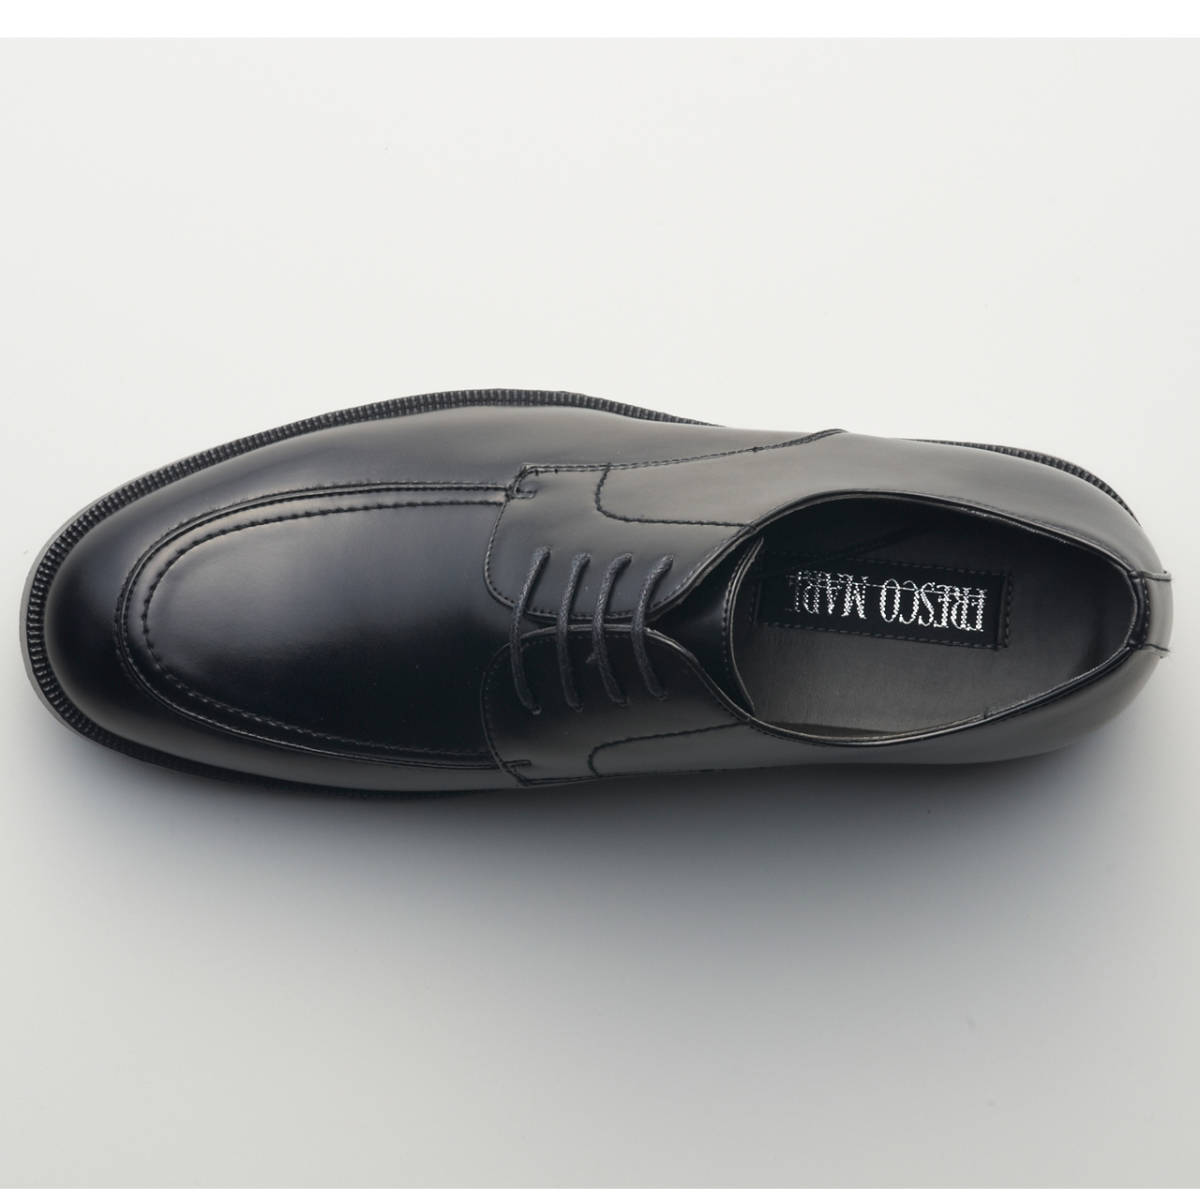 ビジネスシューズ メンズ ブラック 大きめ 革靴 メンズ 紳士靴 25.0cm ゆったり 幅広